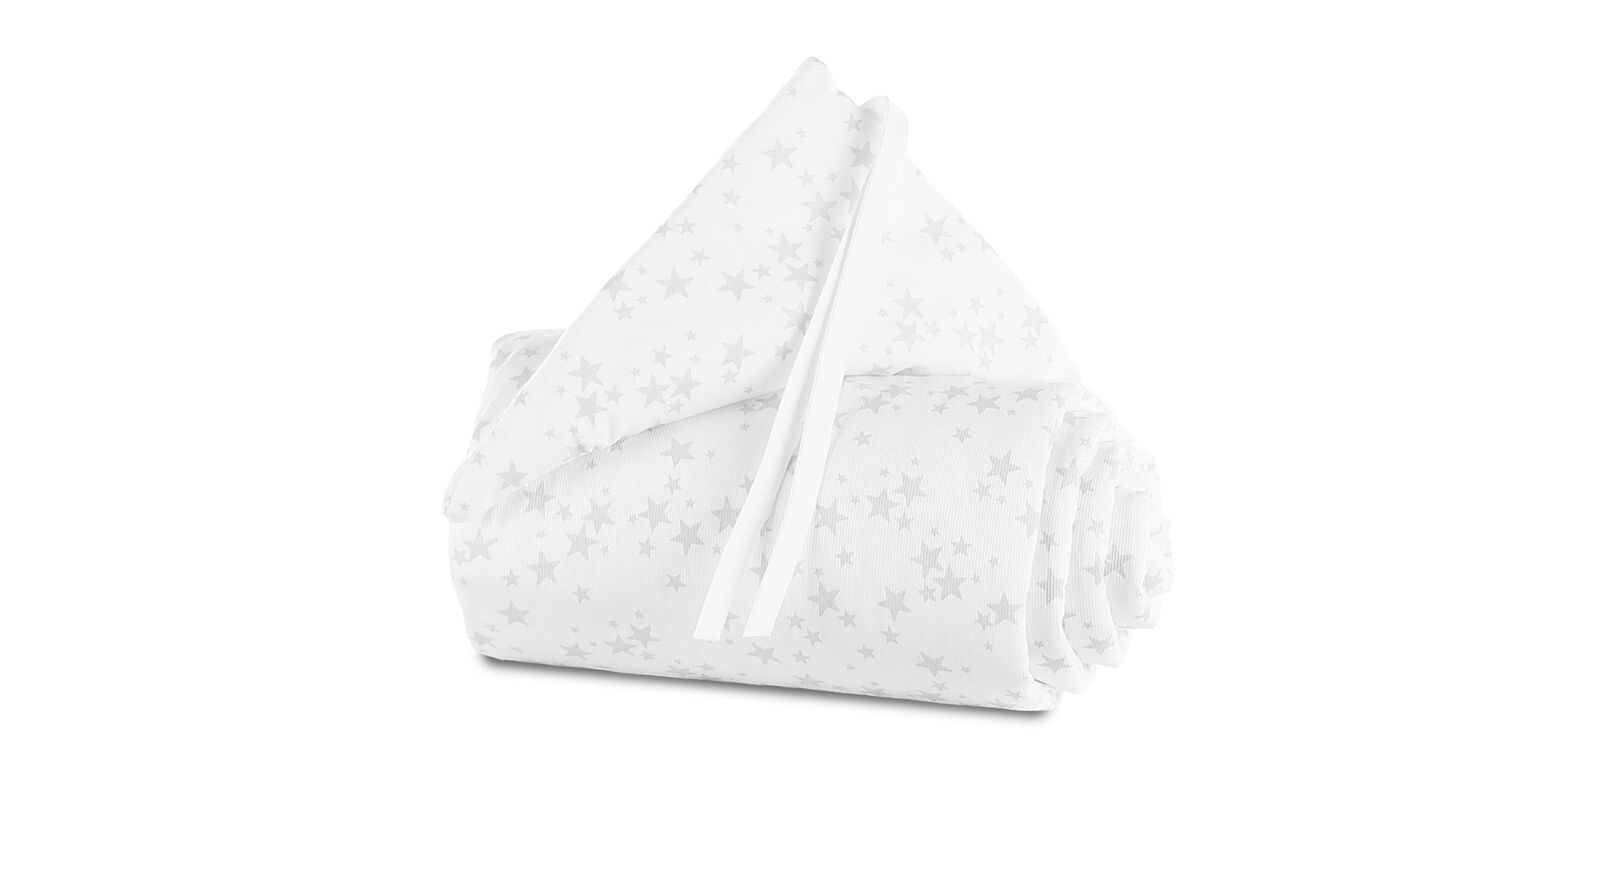 Himmel und Nestchen der Marke Babybay in Weiß mit grauen Sternen